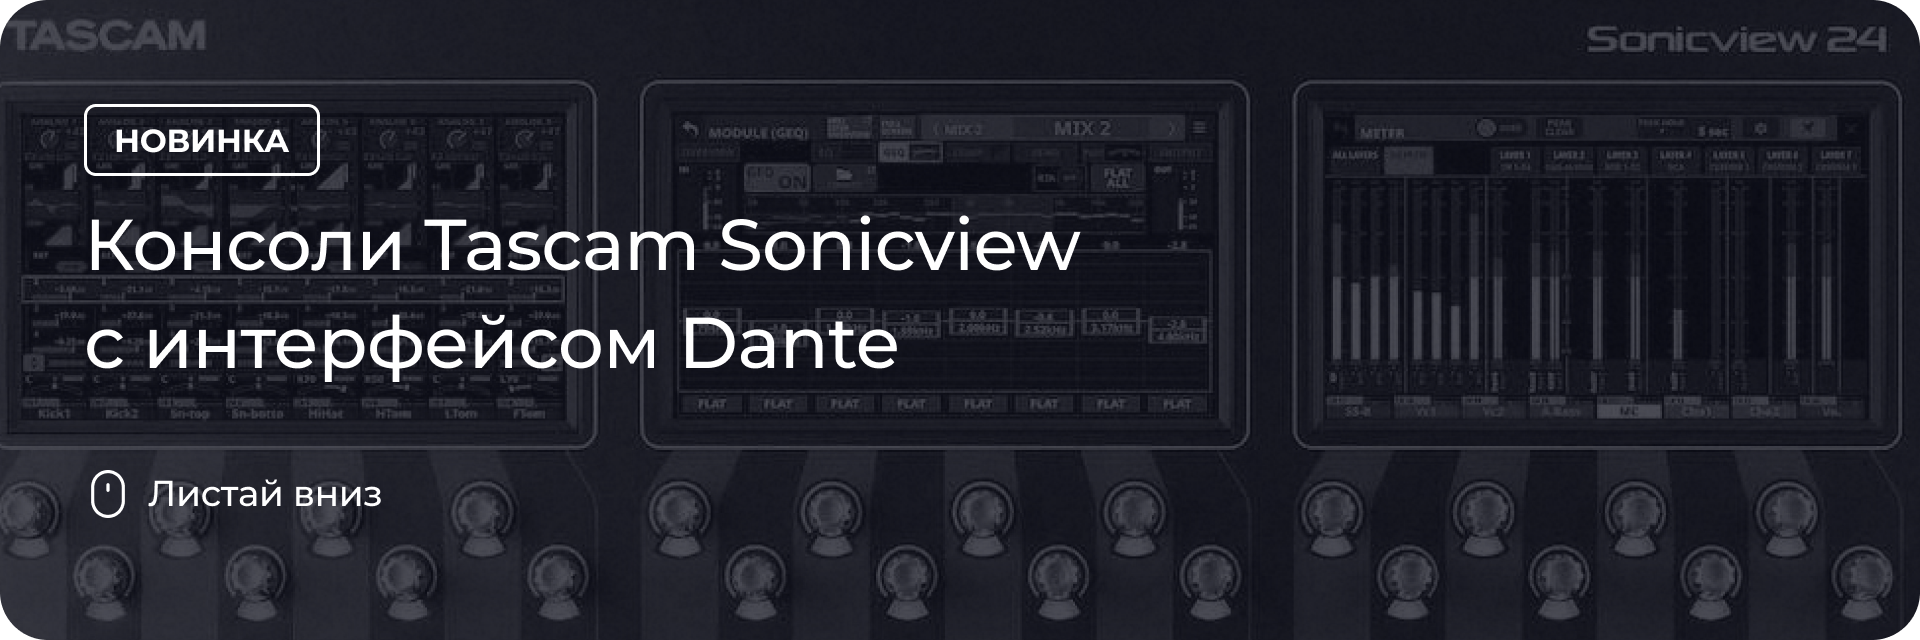 Консоли Tascam Sonicview с интерфейсом Dante